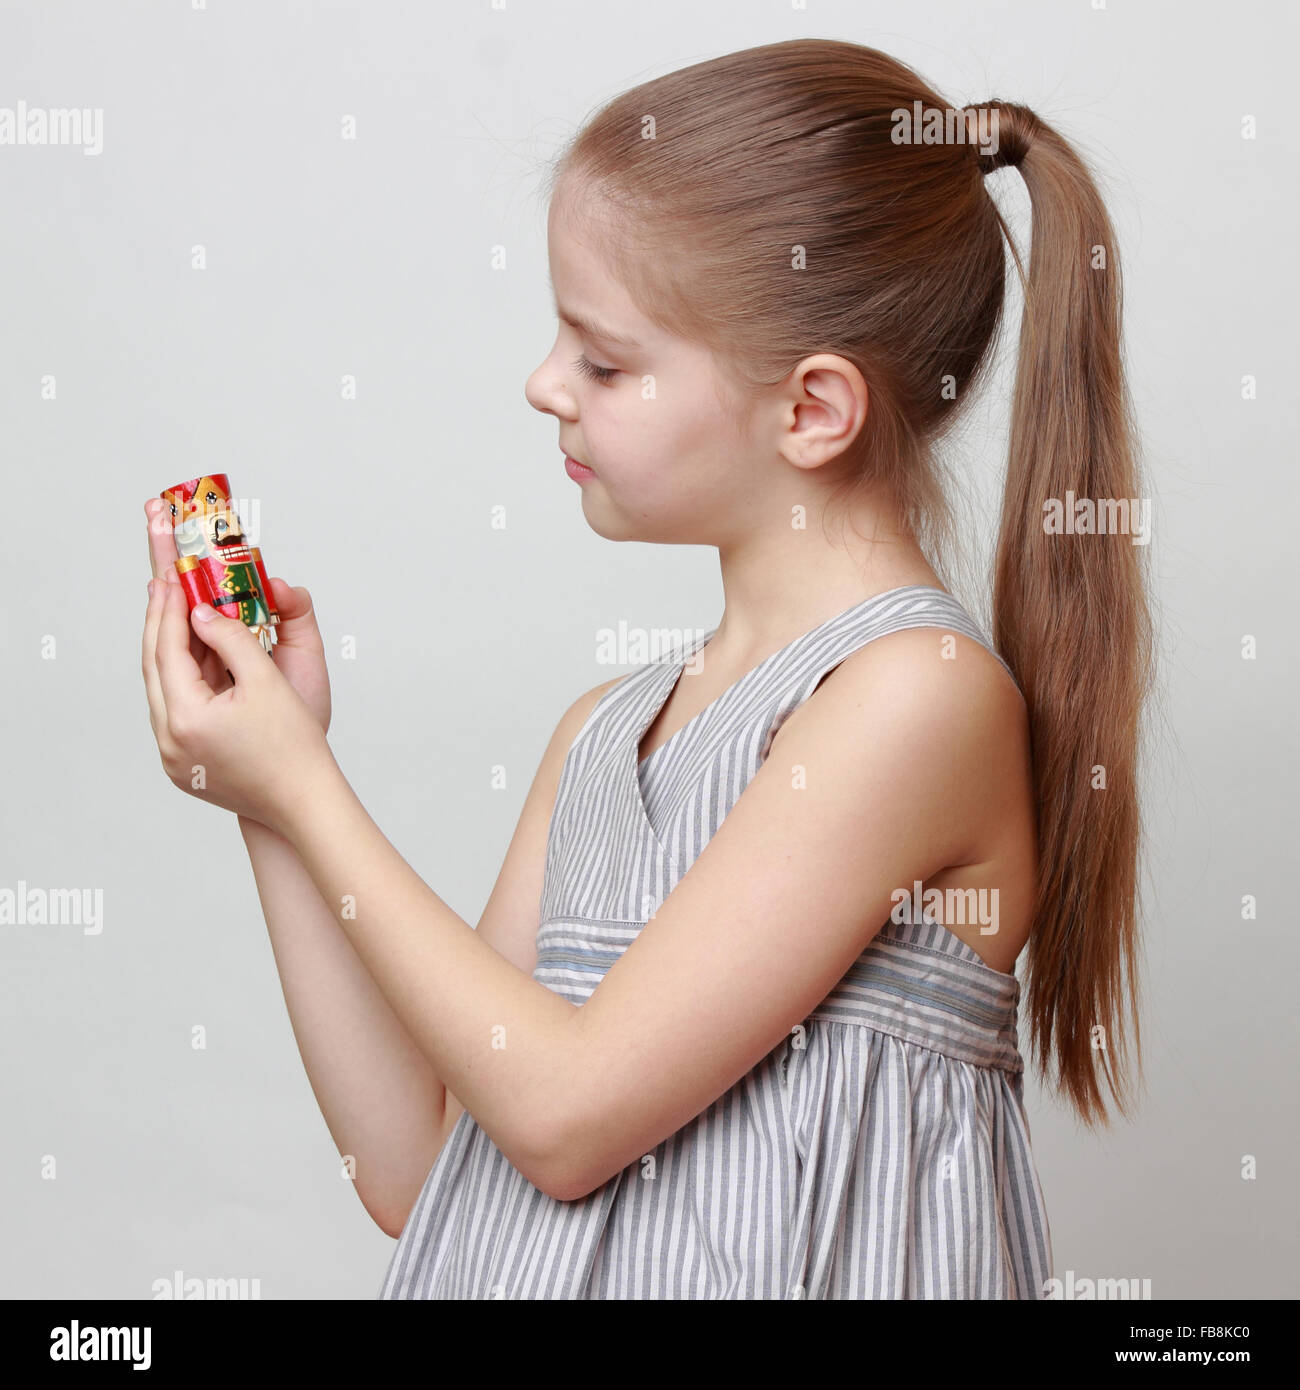 Mode-europäische Mädchen Weihnachten Nussknacker Spielzeug vom Ballett festhalten Stockfoto